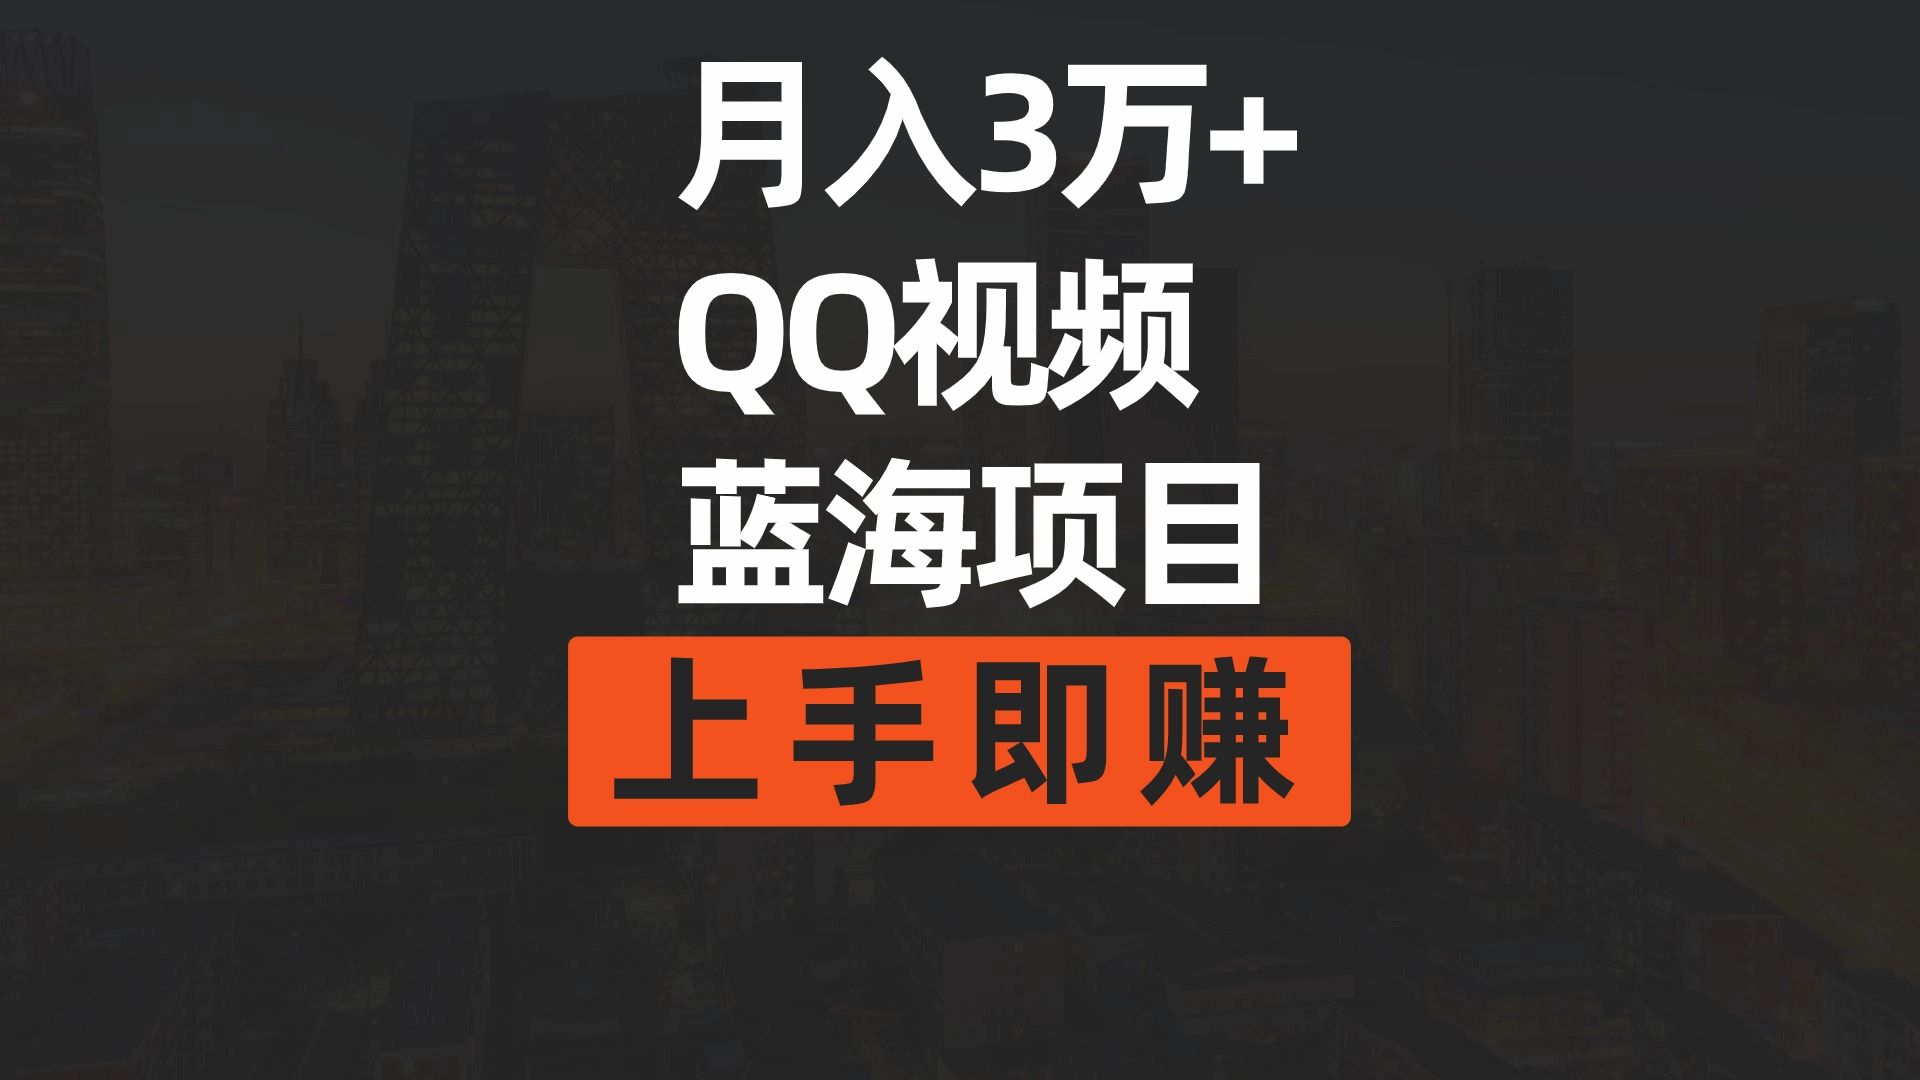 （9503期）月入3万简单搬运去重QQ视频蓝海赛道上手即赚